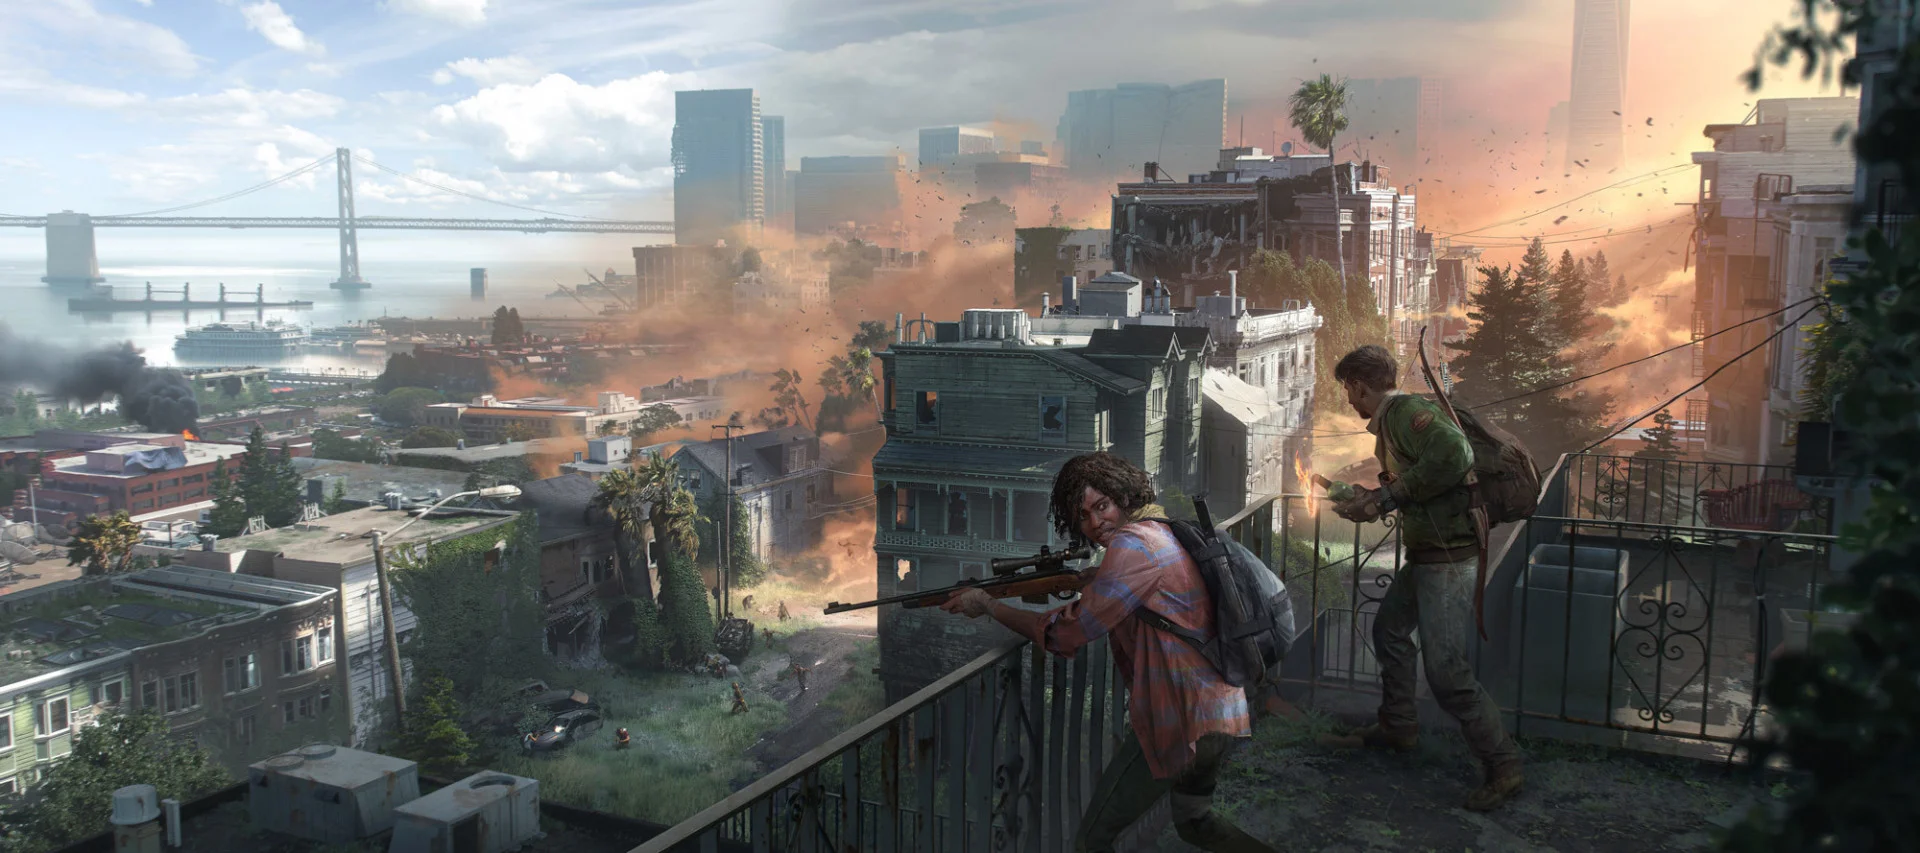 SGF 2022: ремейк The Last of Us, мультиплеерный проект во вселенной и сериал HBO - фото 1